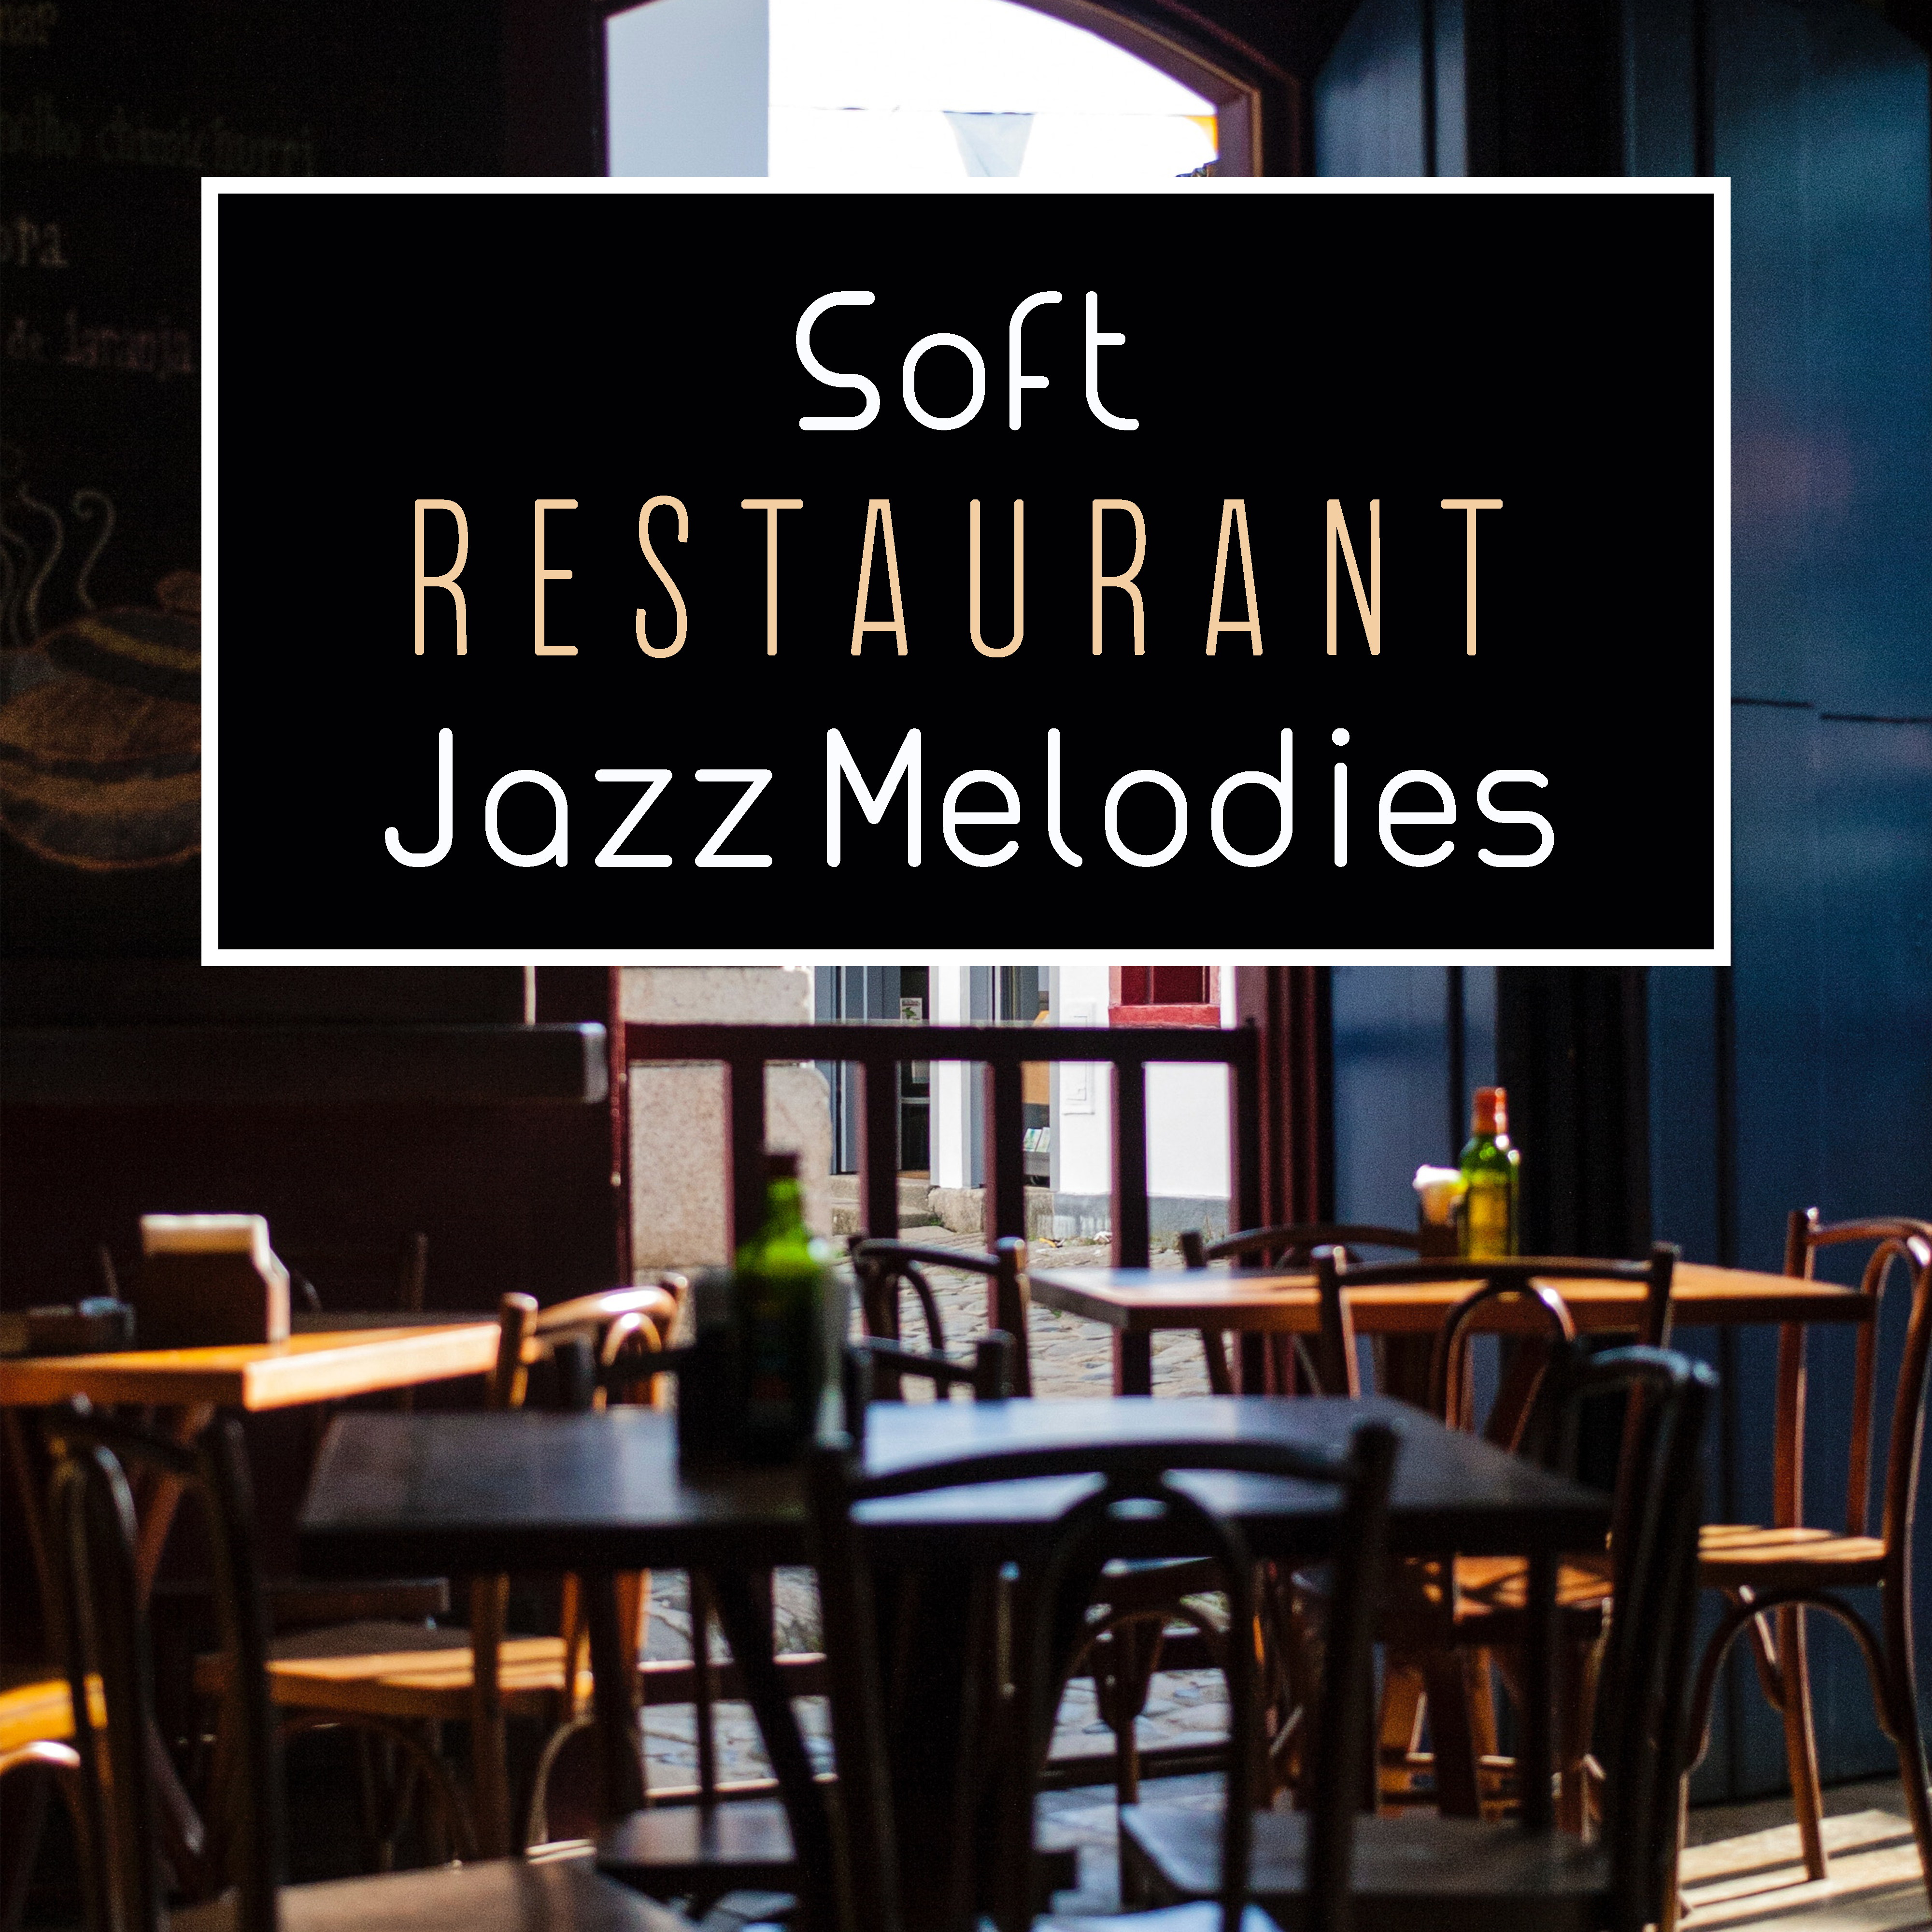 Soft Restaurant Jazz Melodies